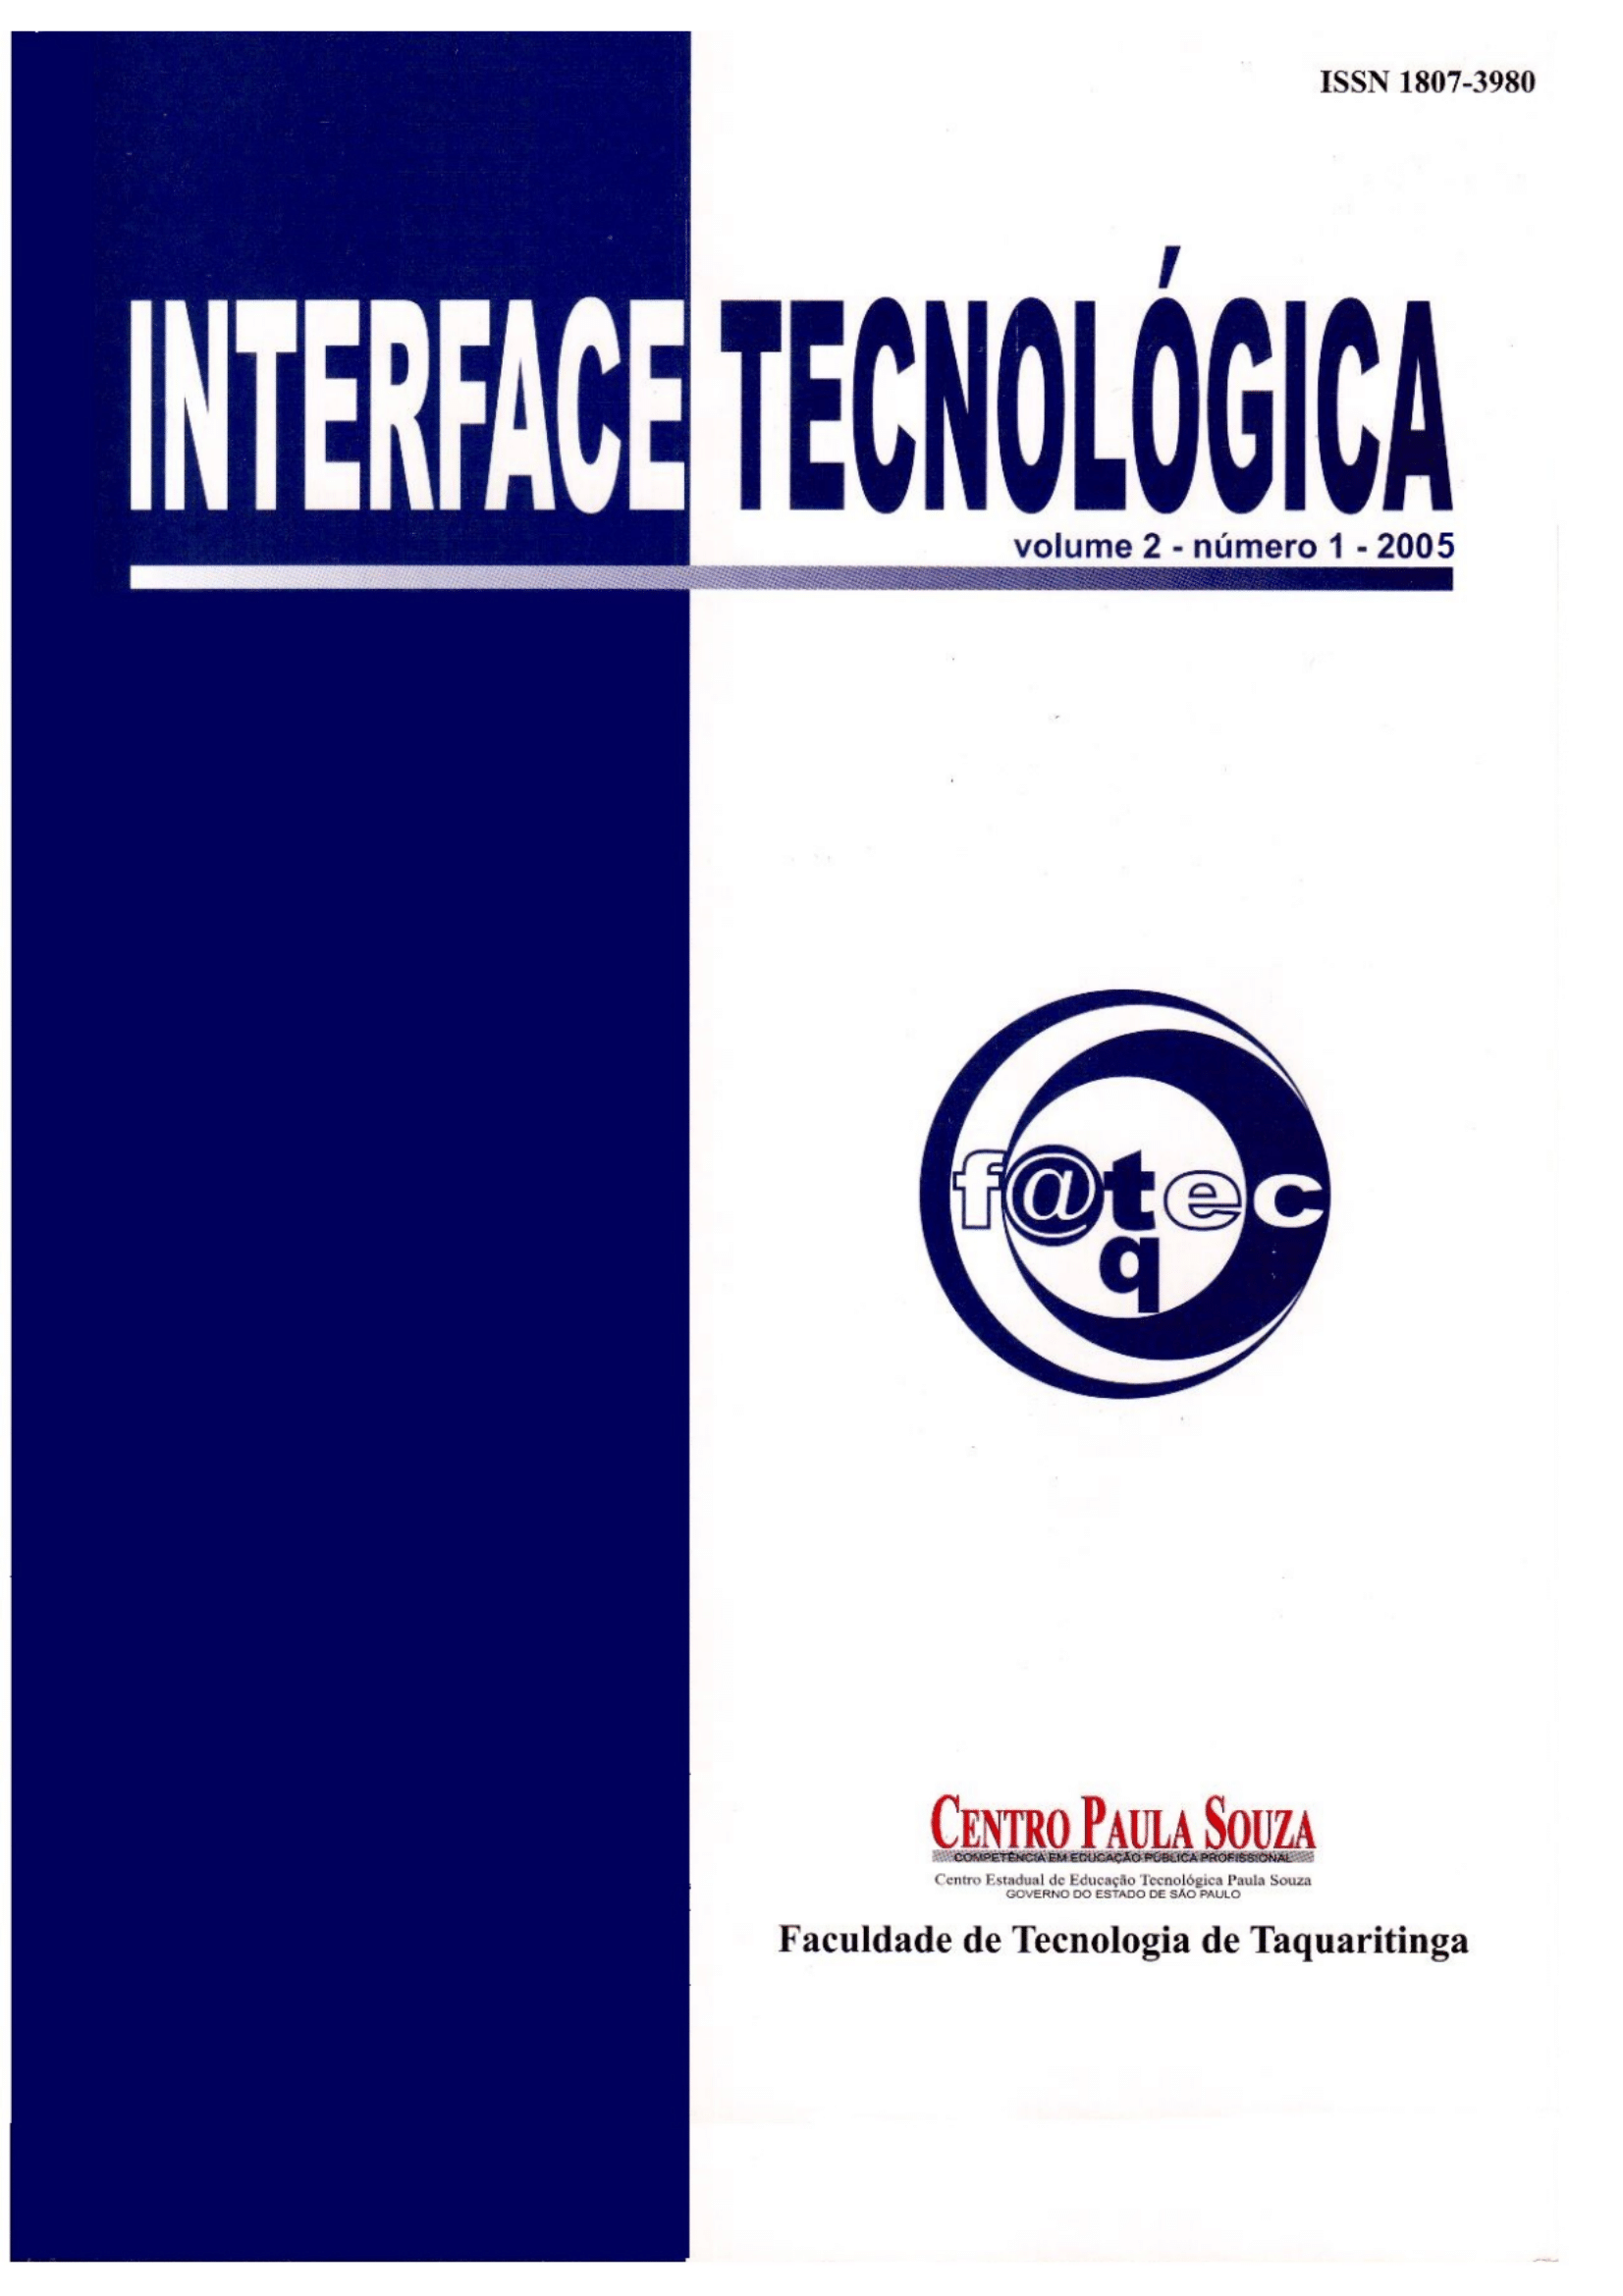 					Visualizar v. 2 n. 1 (2005): Revista Interface Tecnológica
				